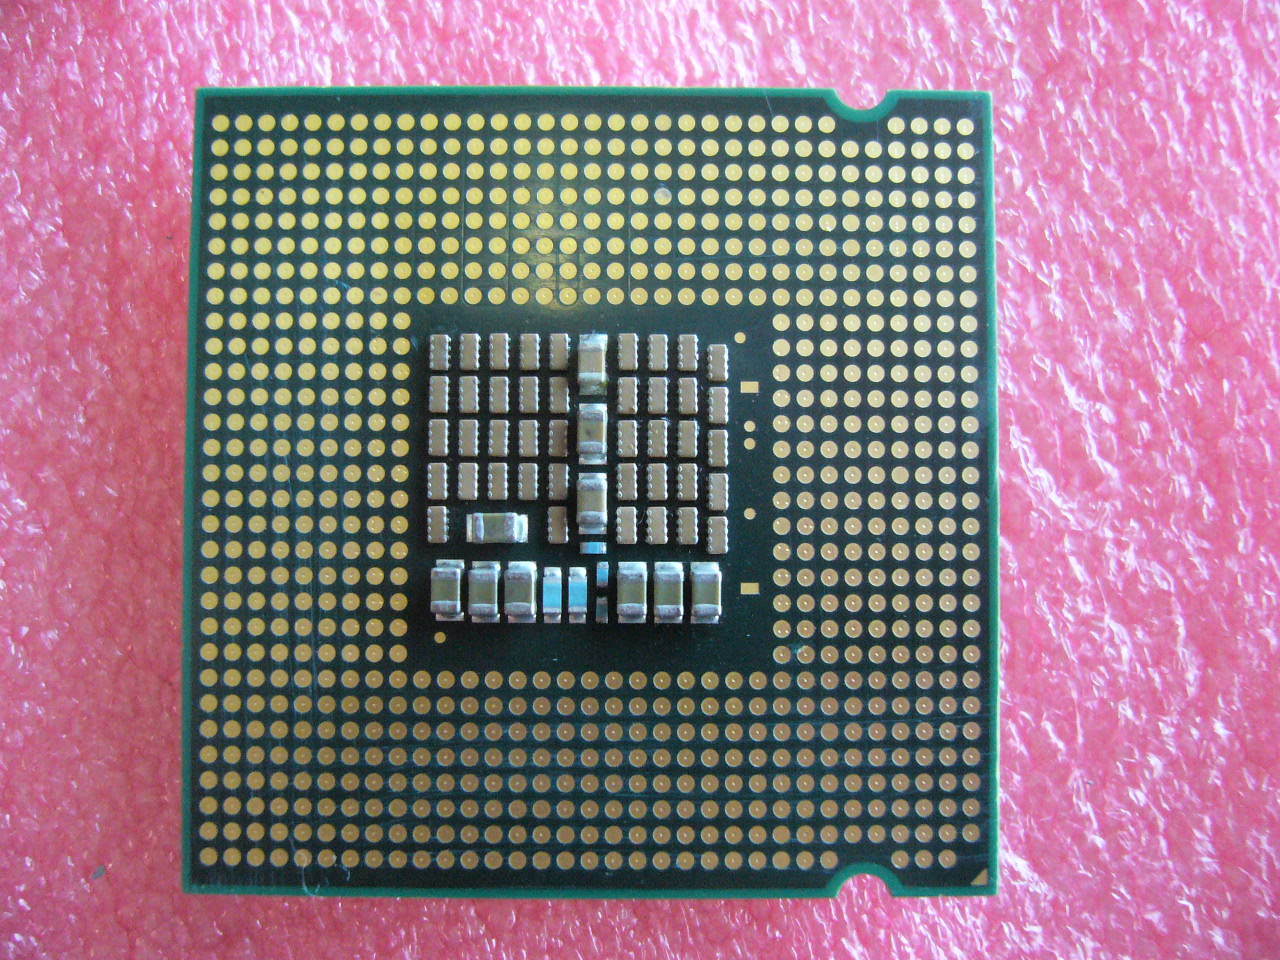 QTY 1x INTEL Core2 Quad Q6600 CPU 2.40GHz/8MB/1066Mhz LGA775 SL9UM - zum Schließen ins Bild klicken